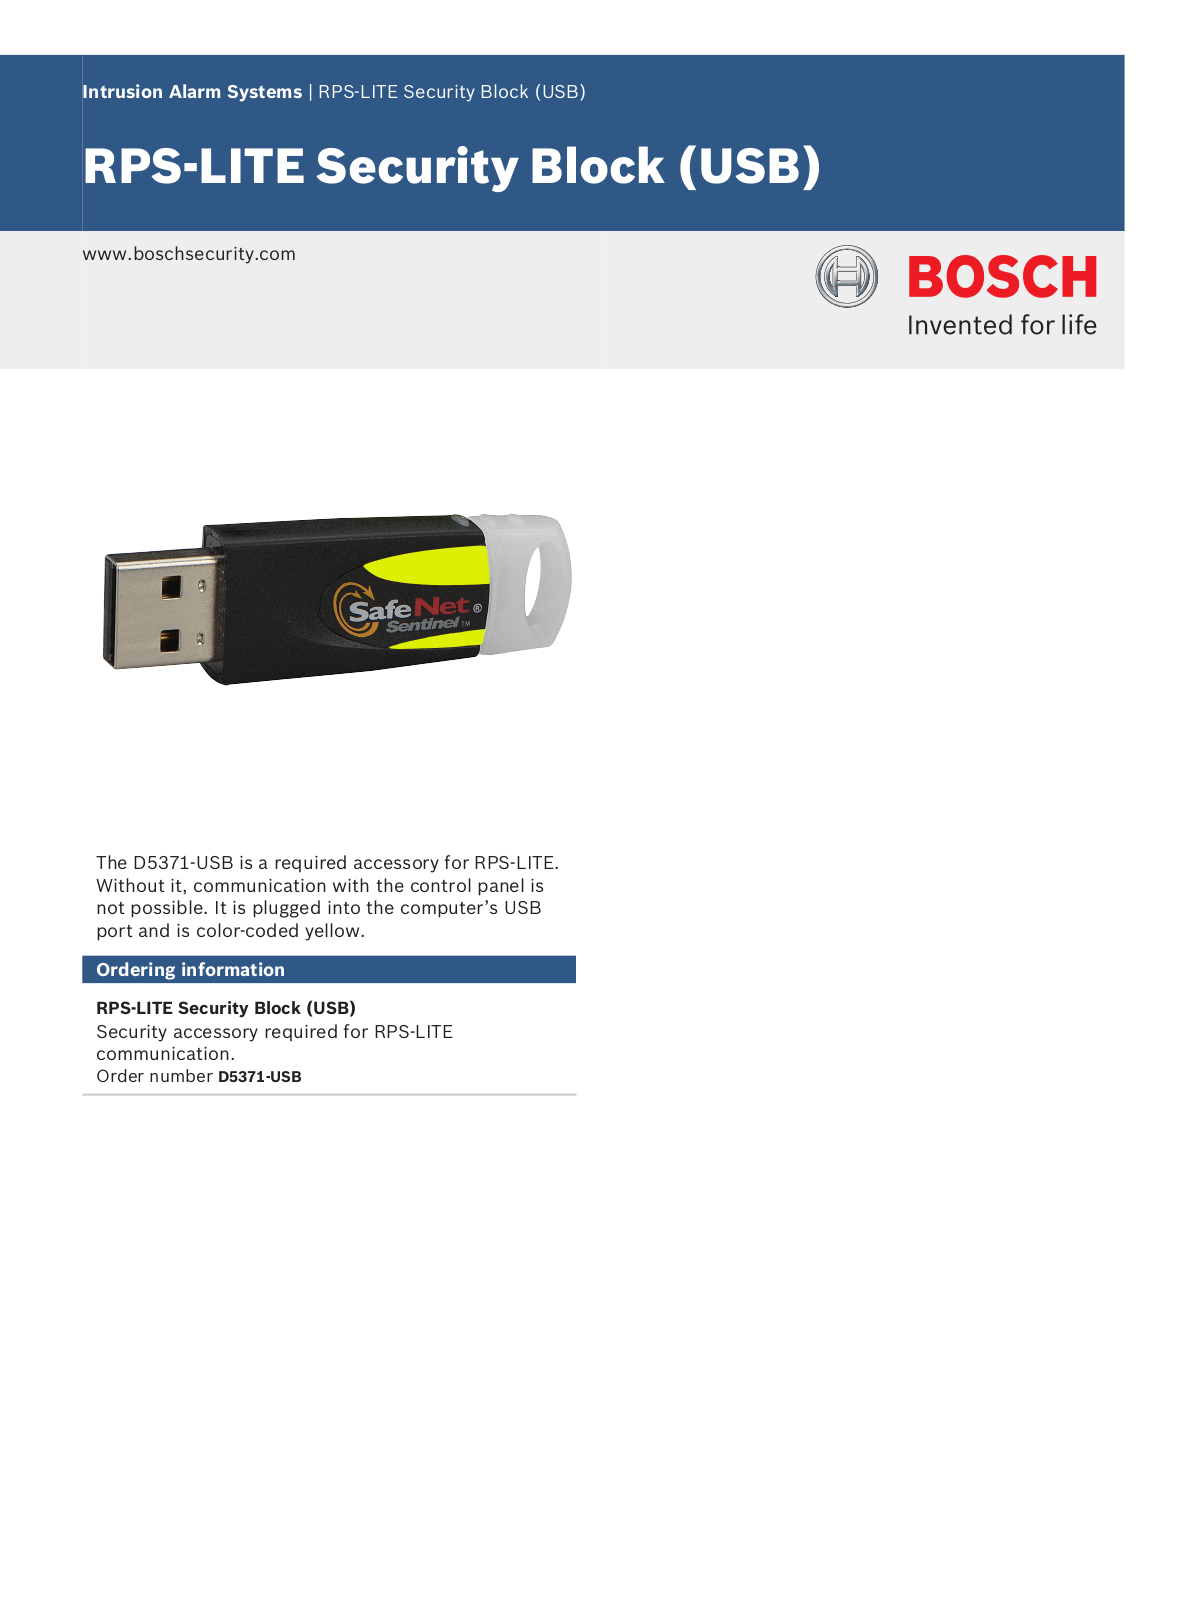 Bosch D5371-USB Specsheet